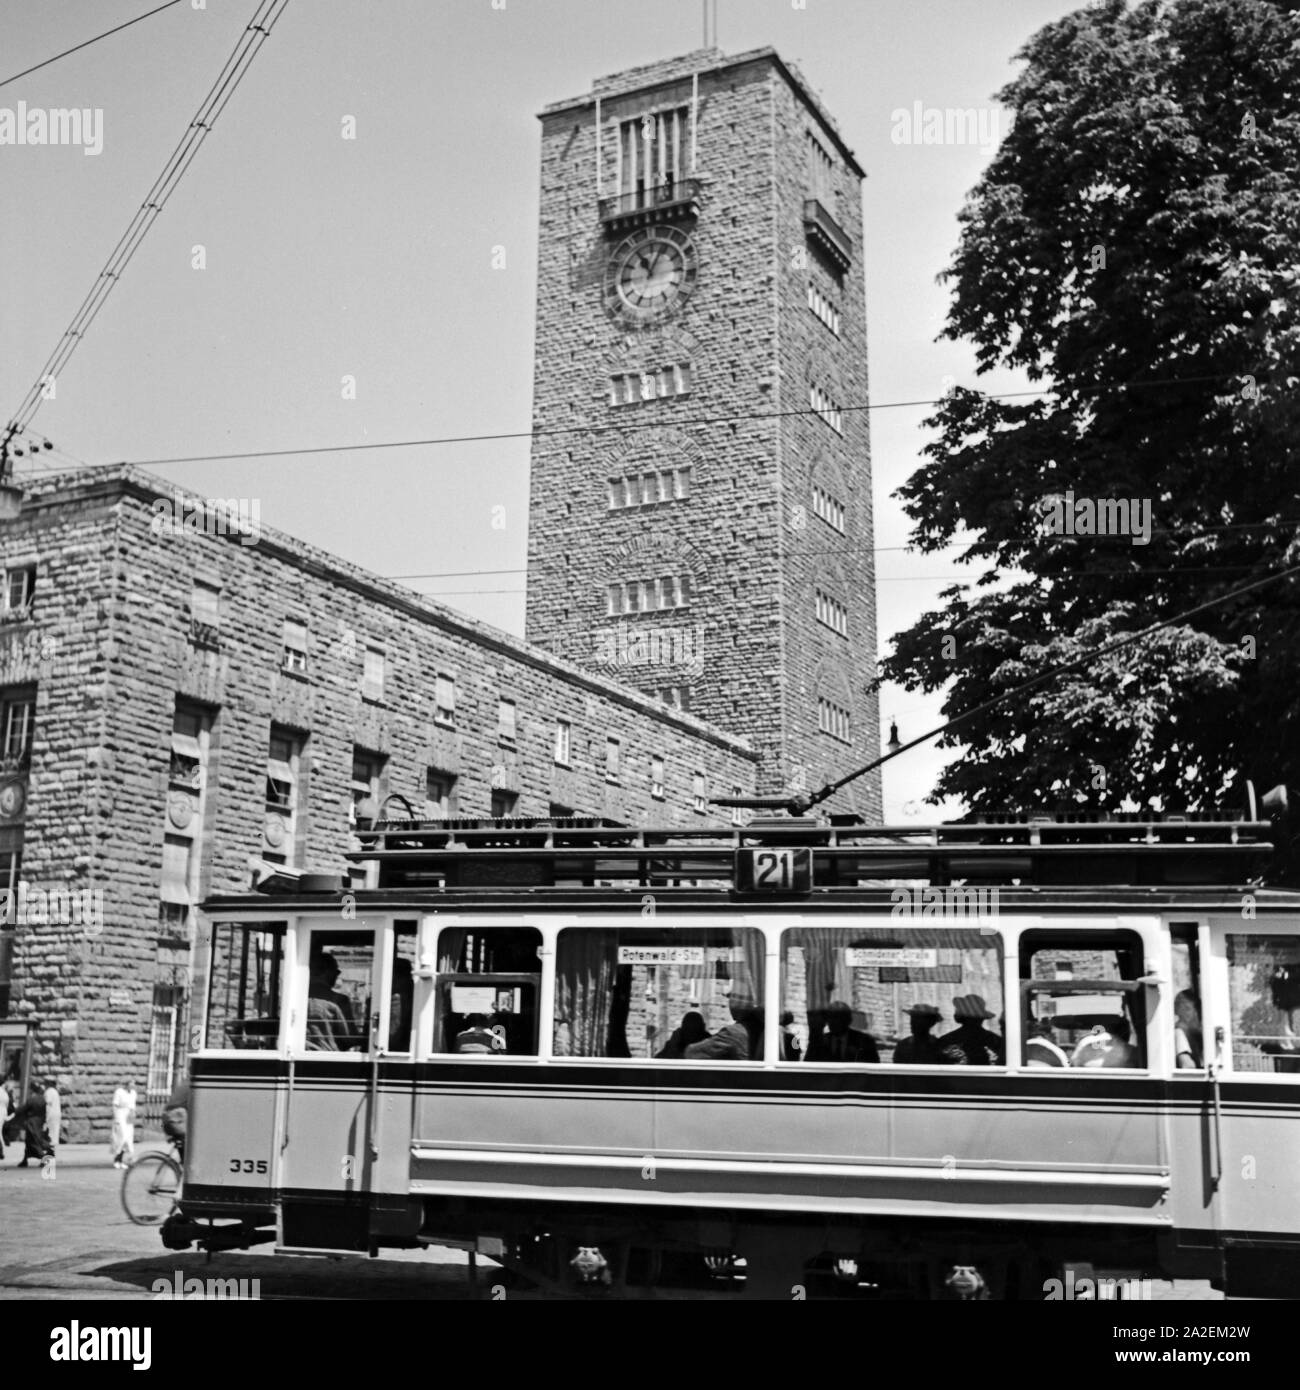 Straßenbahn der Linie 2 am Hauptbahnhof in Stuttgart, Deutschland, 1930er Jahre. Mit dem Tram 2 Vor dem Hauptbahnhof Stuttgart, Deutschland 1930. Stockfoto